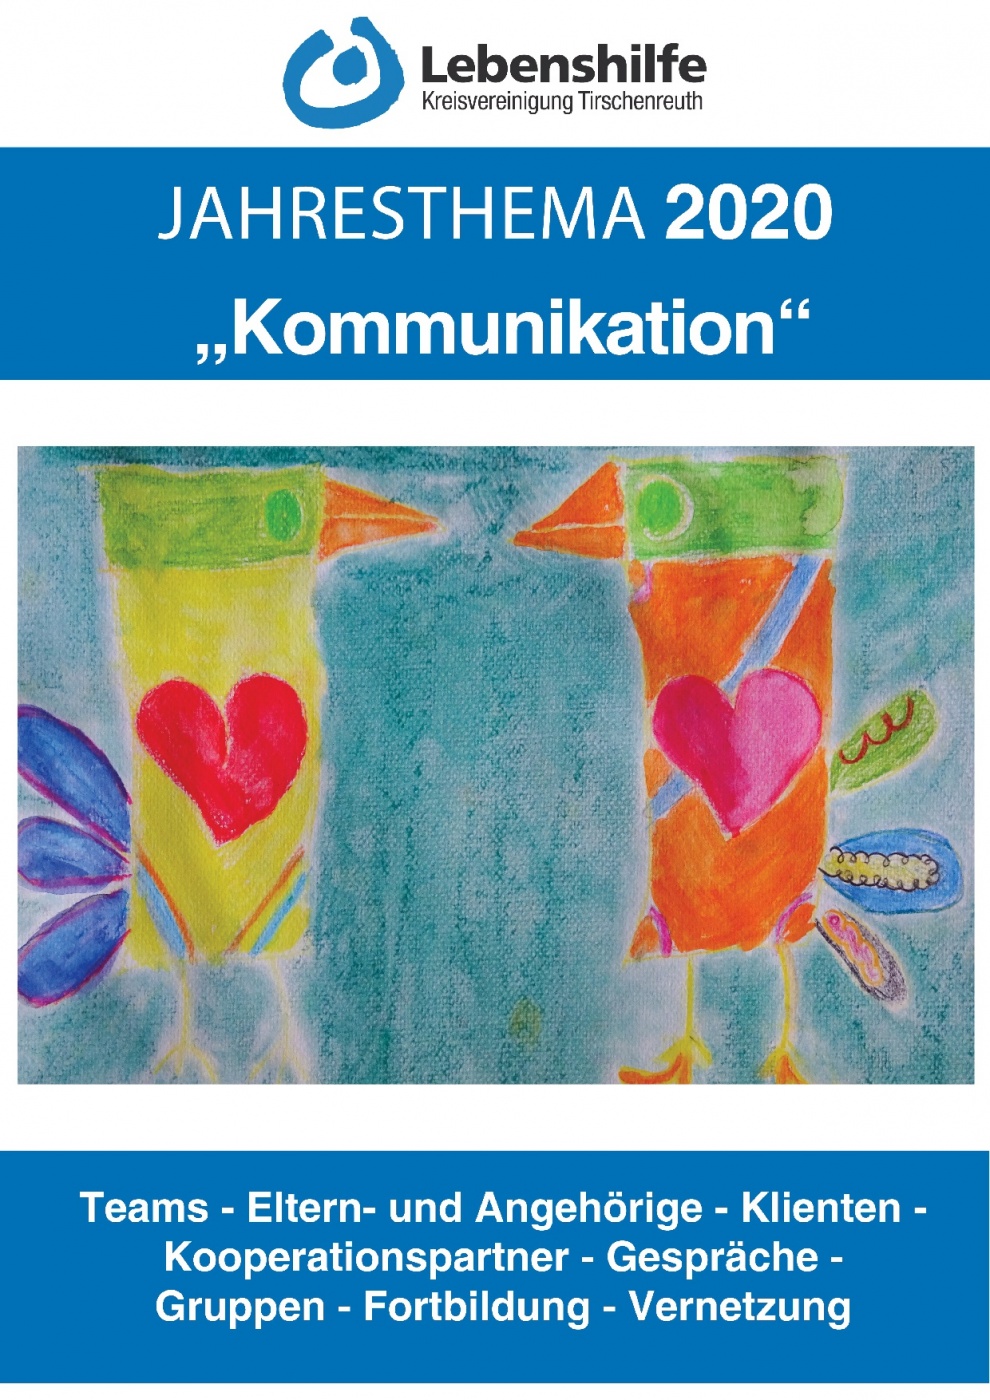 Unser Jahresthema 2020: Kommunikation